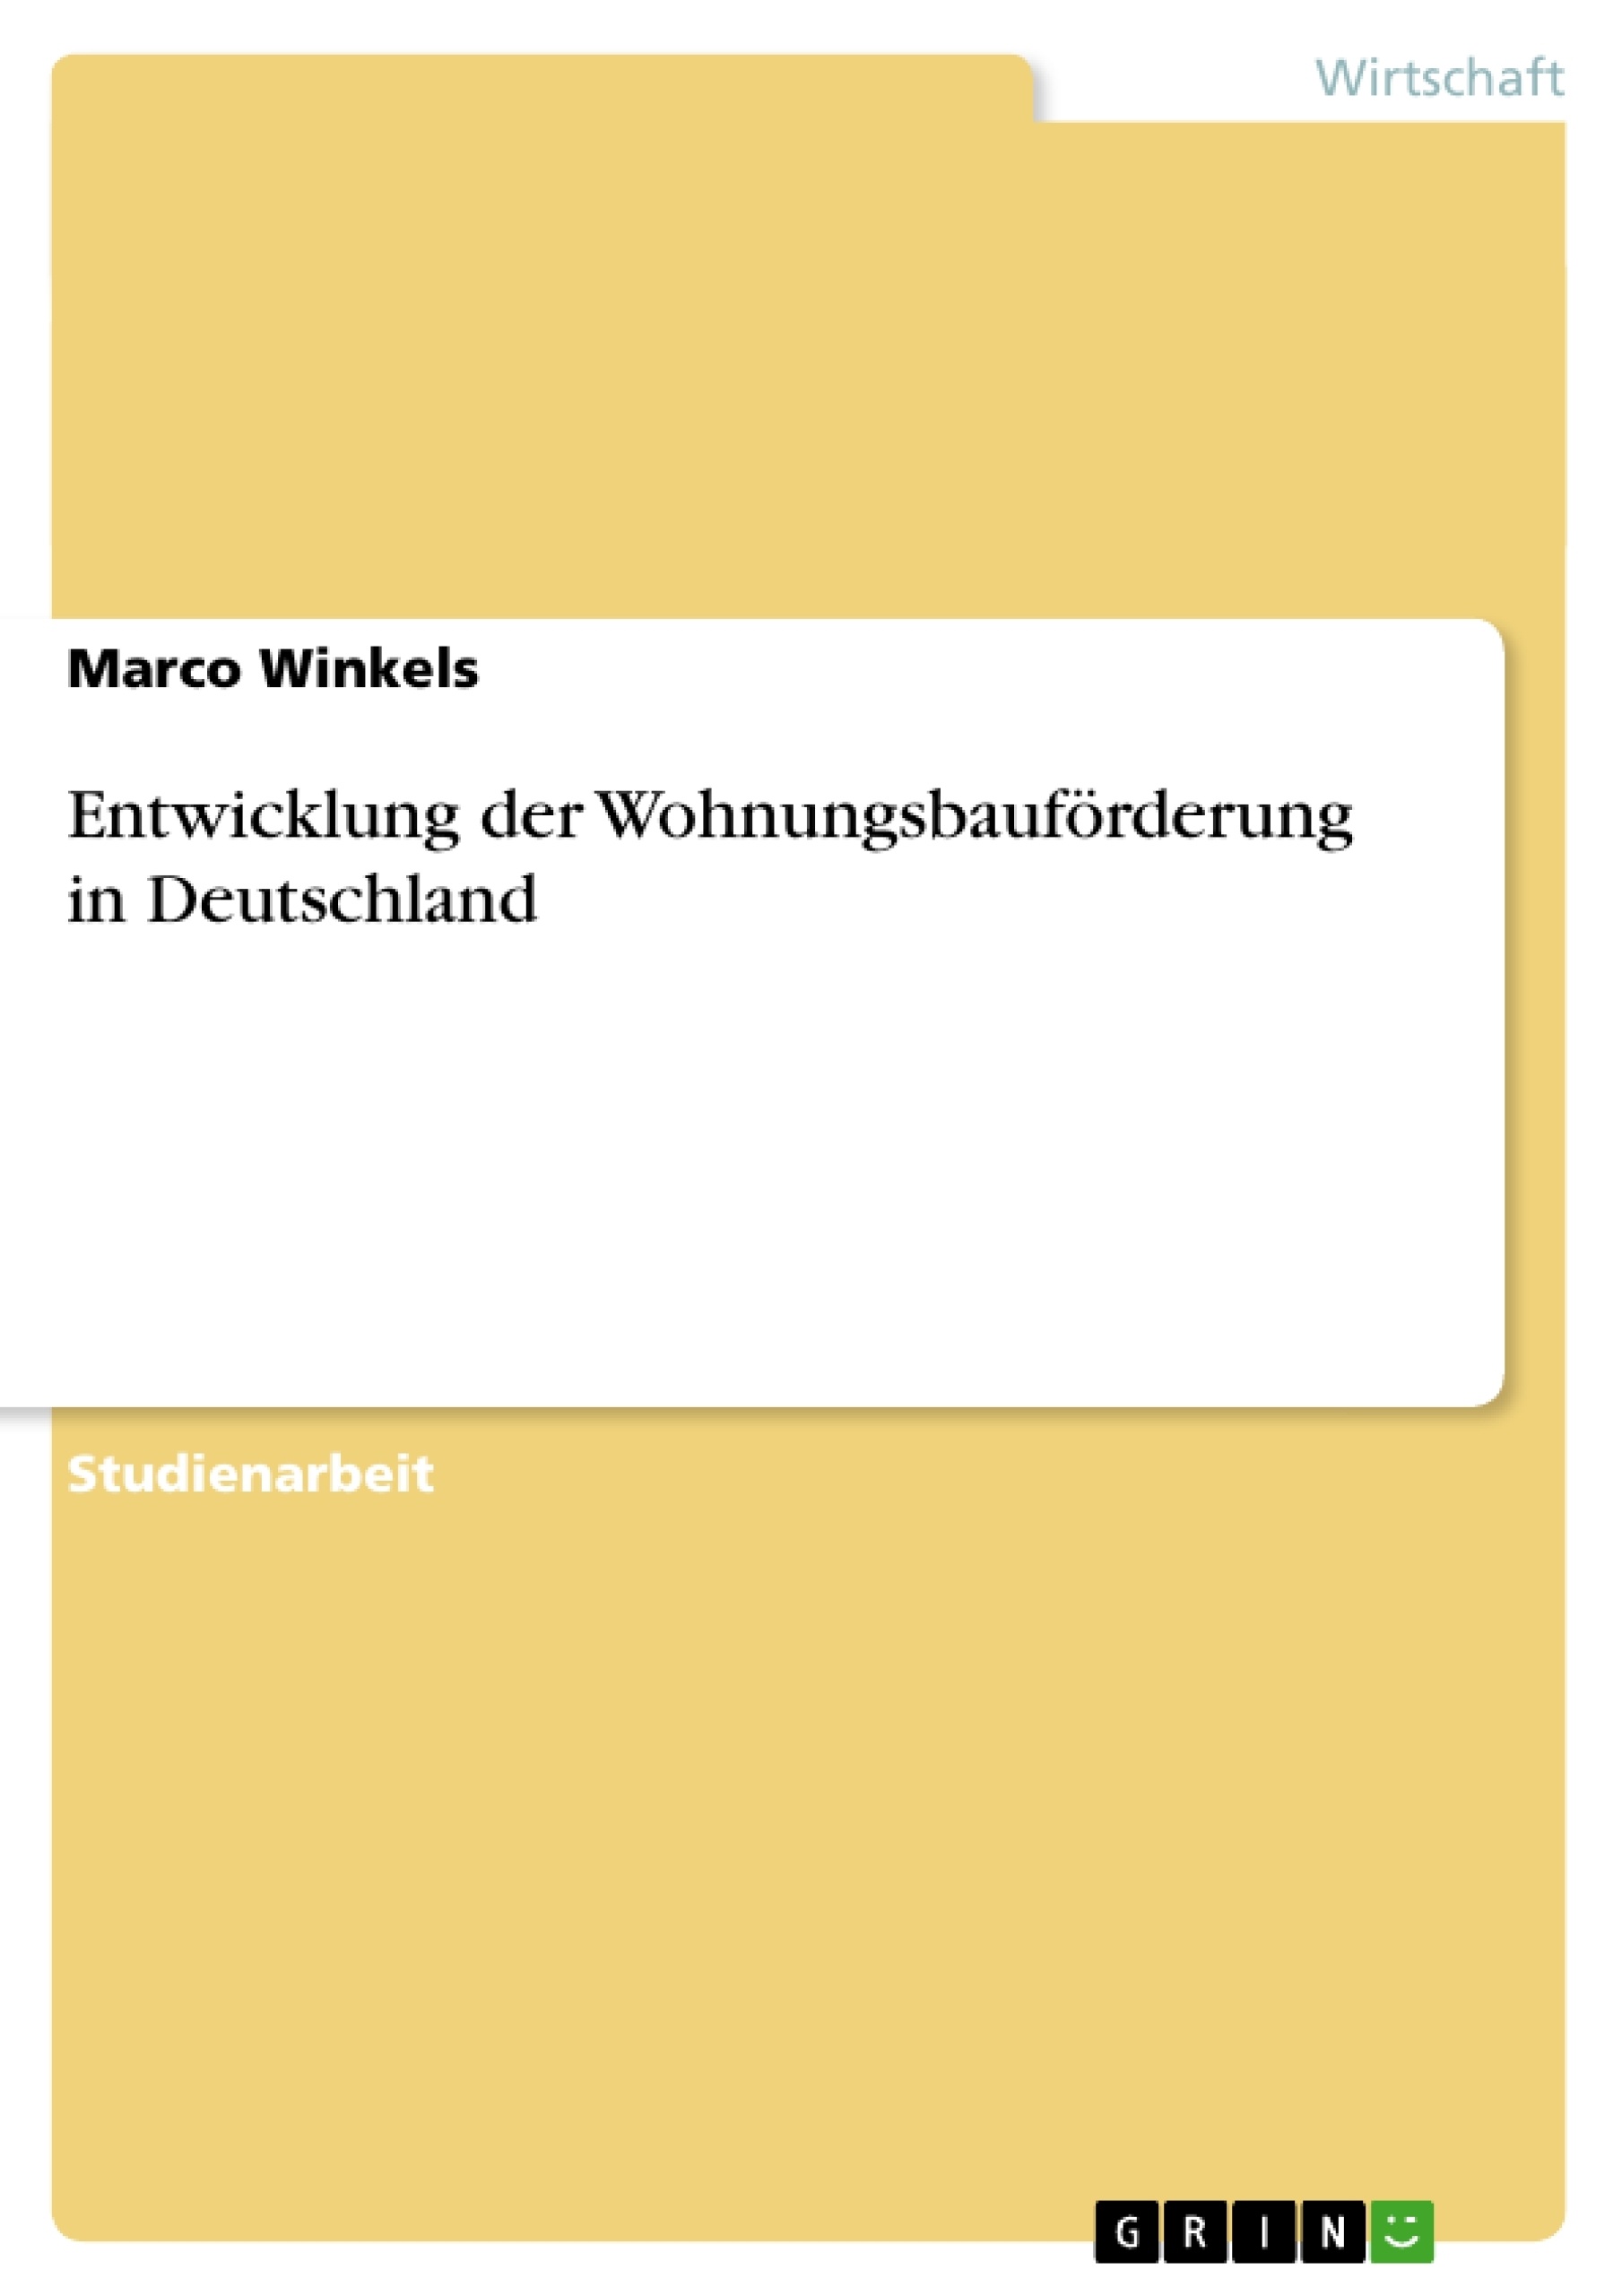 Título: Entwicklung der Wohnungsbauförderung in Deutschland